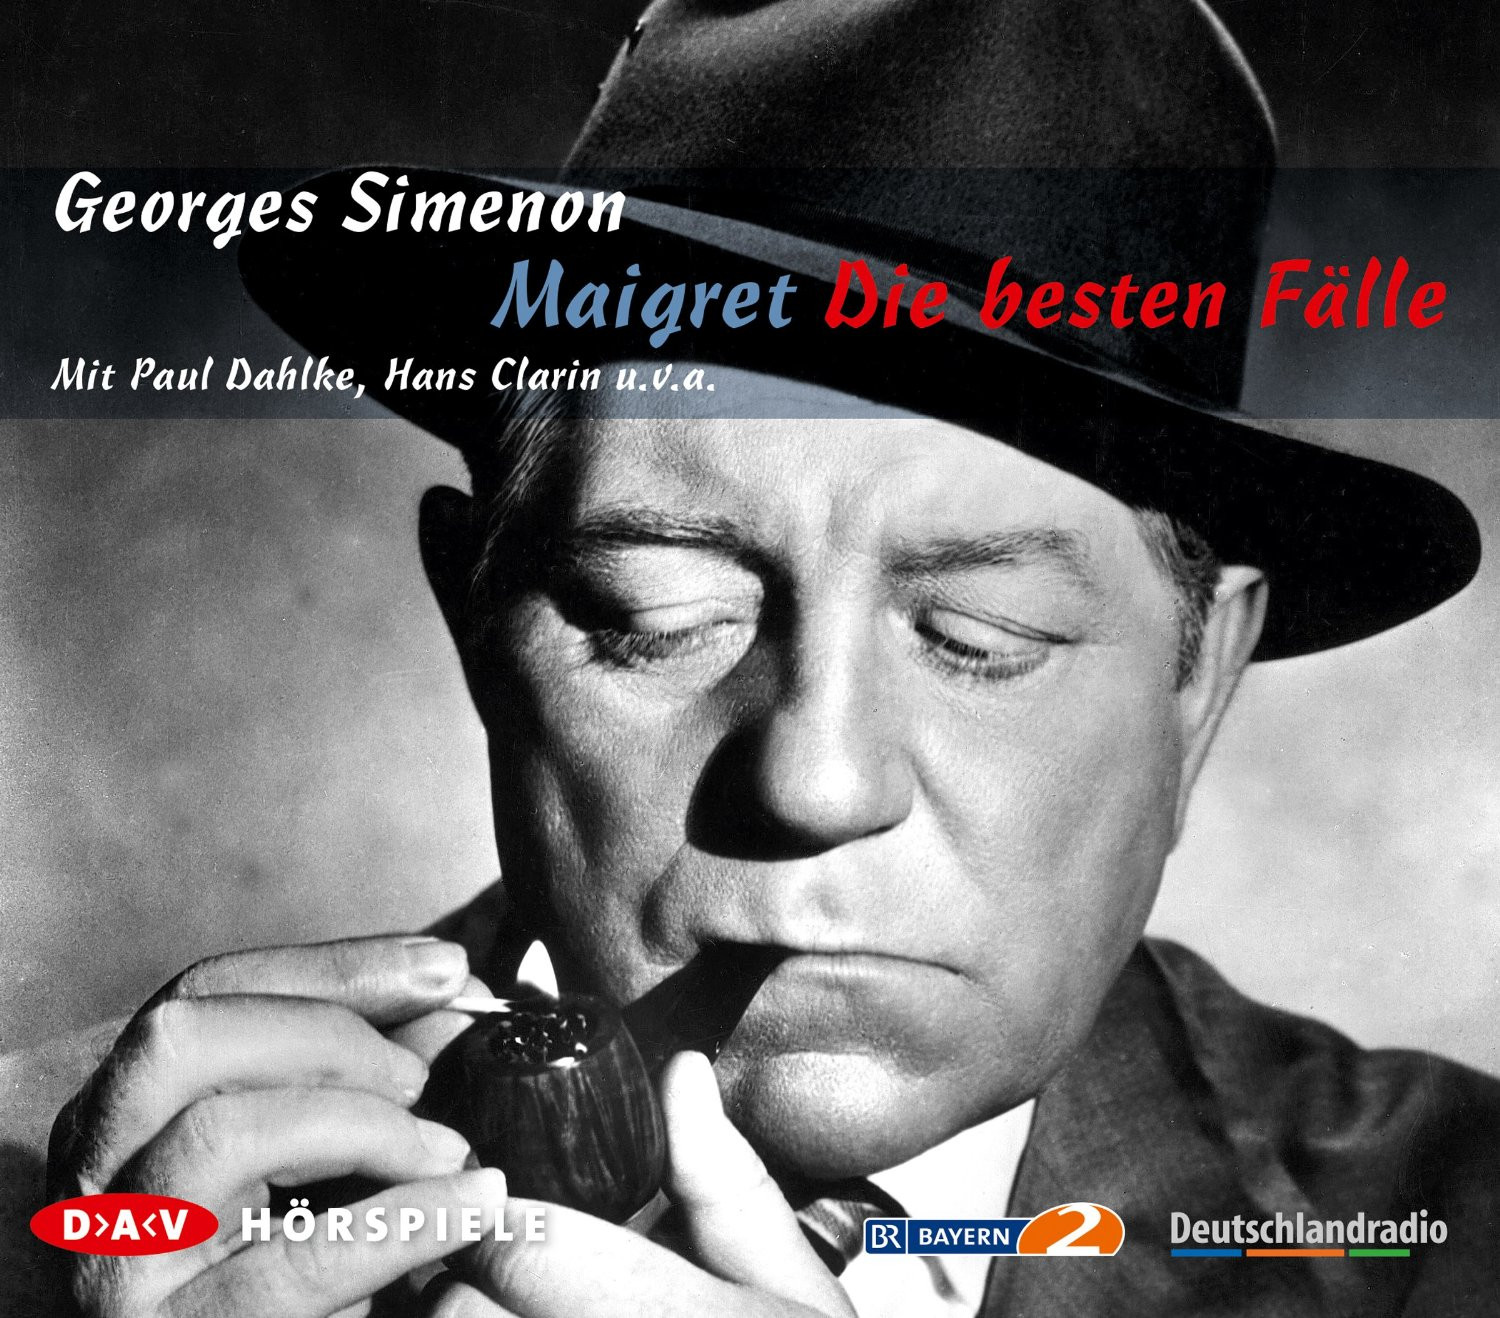 Georges Simenon - Maigret: Die besten Fälle (Hörspiele)